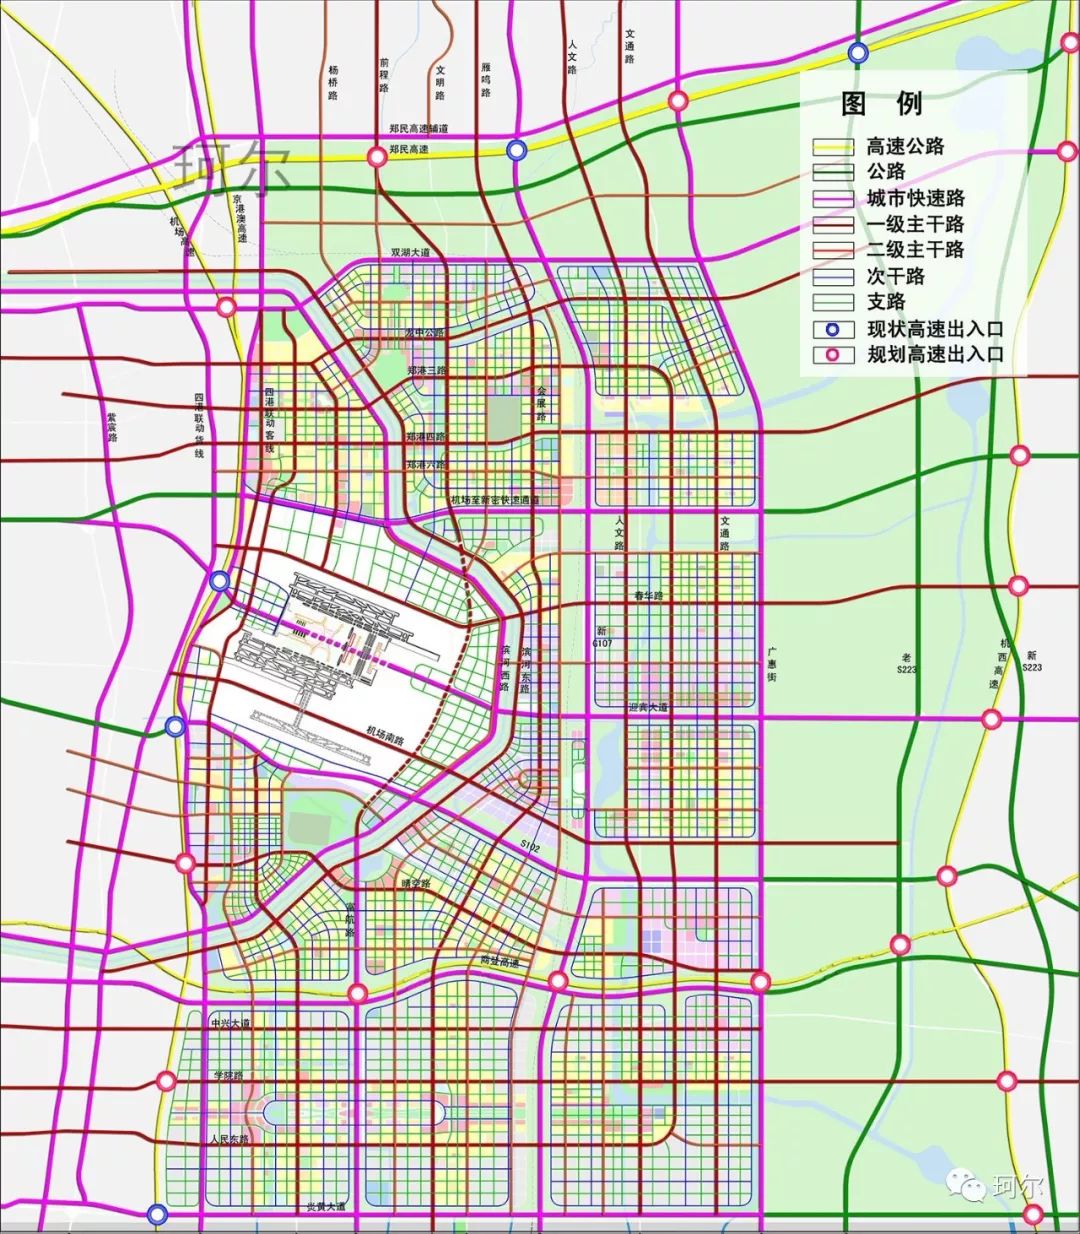 08郑州航空大都市交通规划示意图08郑州航空大都市整体鸟瞰示意图